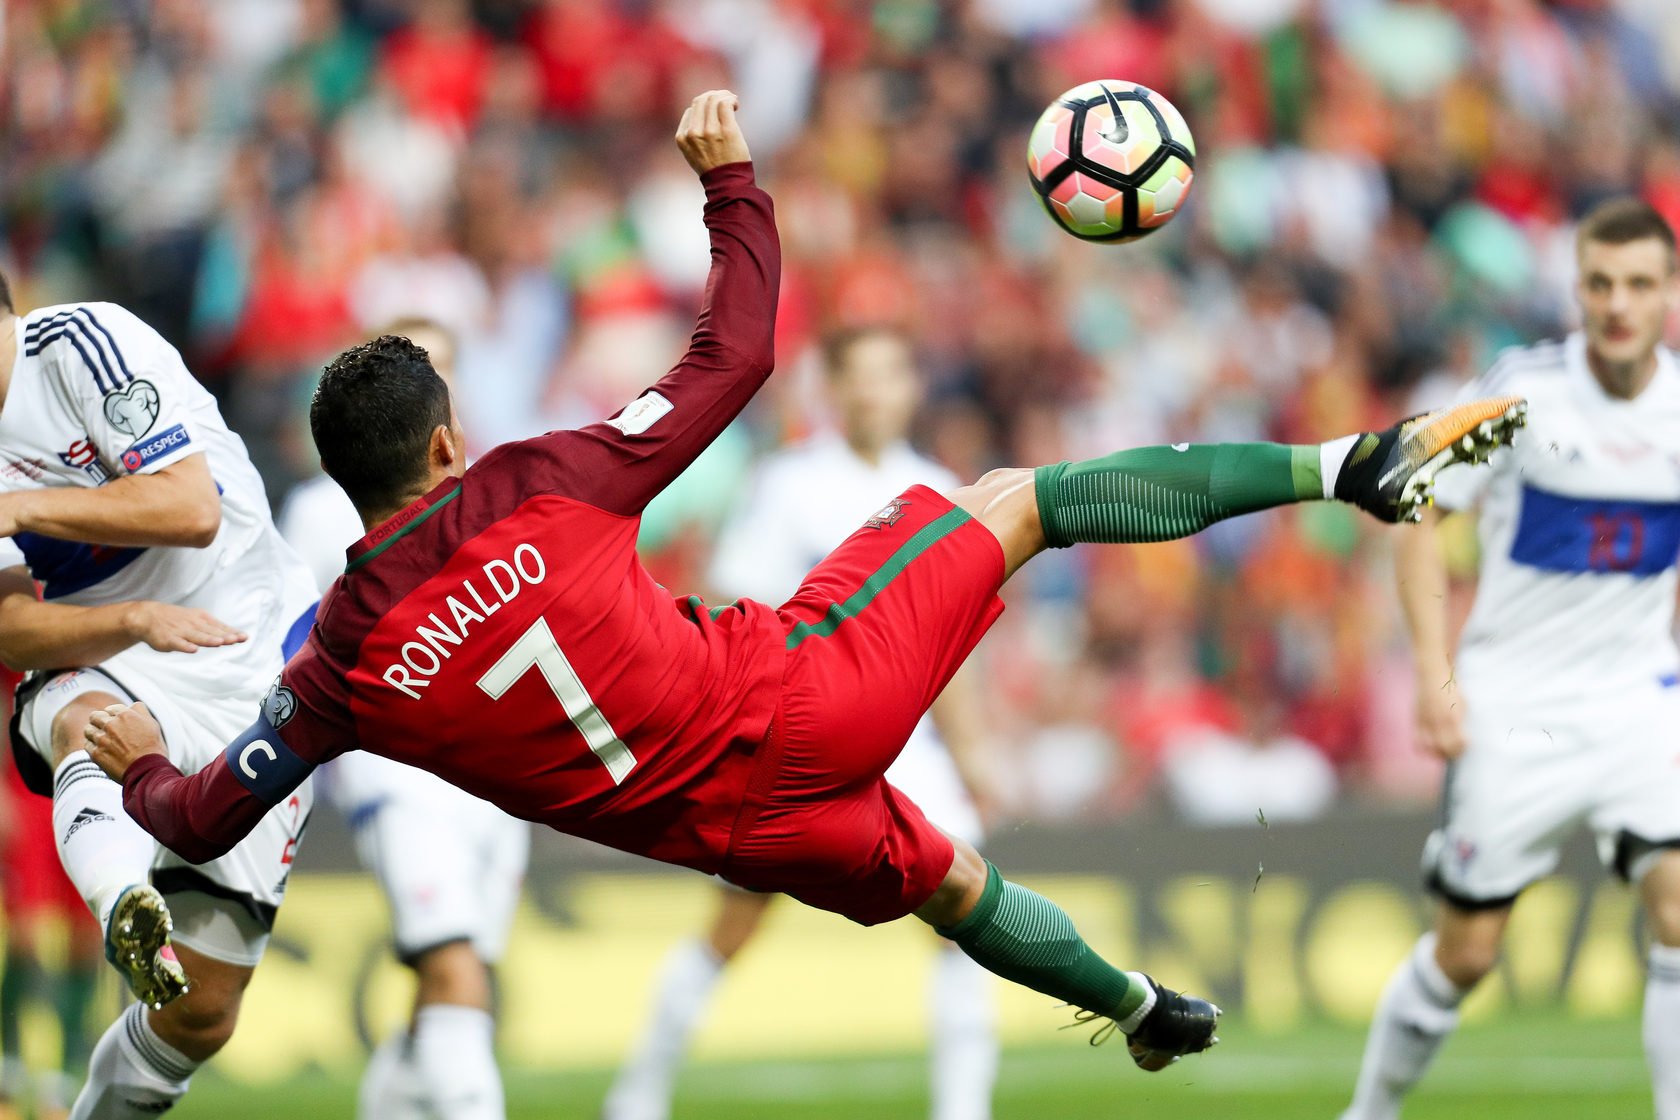 Момент игры в футбол. Футболист Роналдо удар через себя. Криштиану Роналду удар через себя. Криштиану Роналду лучшие голы. Cristiano Ronaldo 2018 удар через себя.